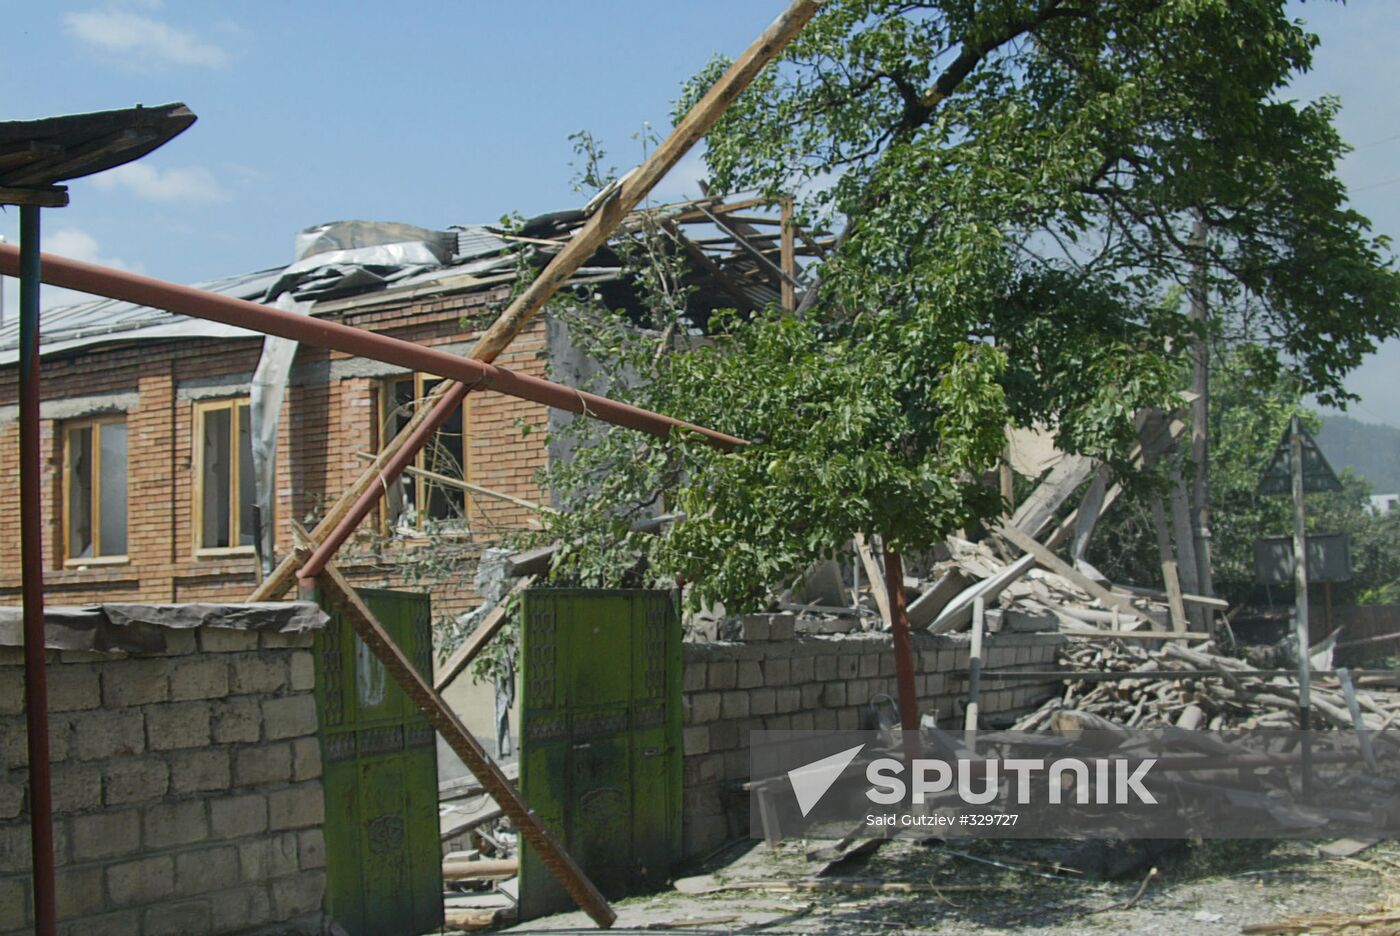 The devastated city of Tskhinvali